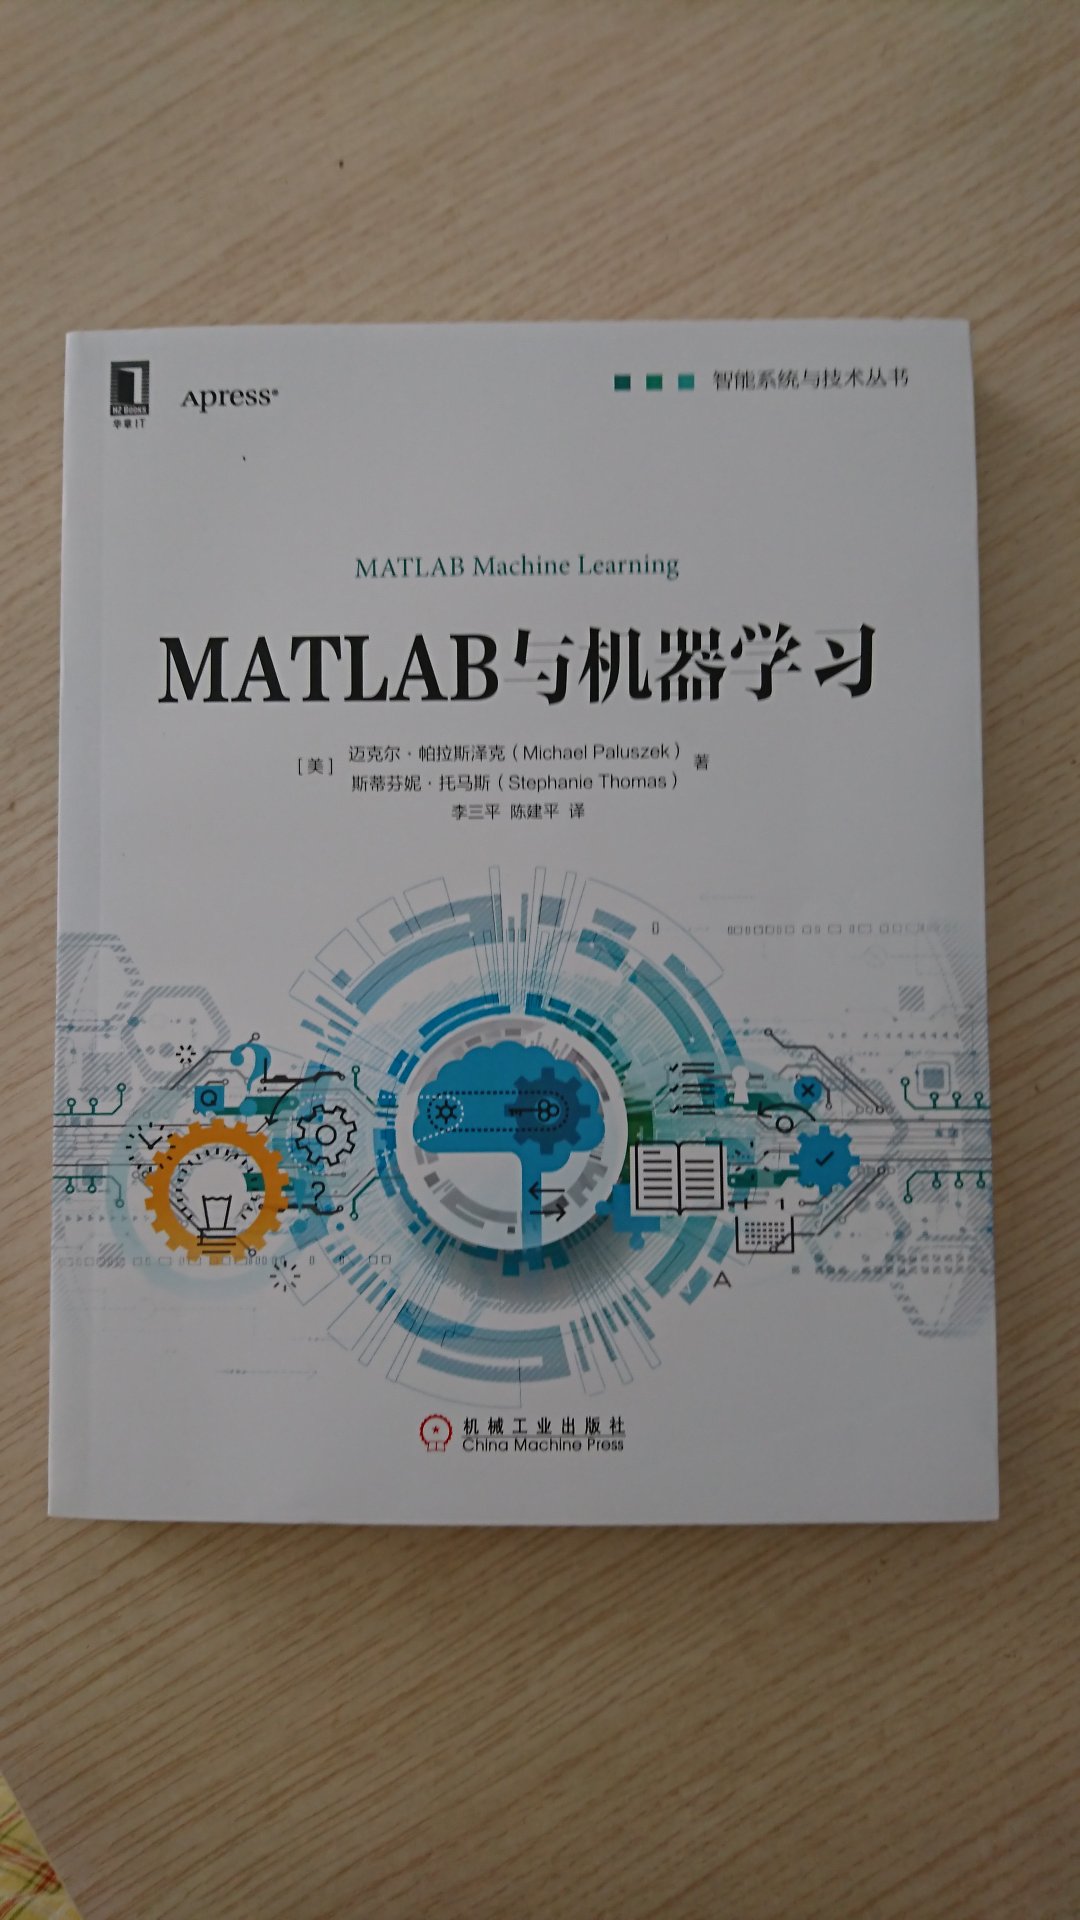 智能系统与技术丛书，本书是关于MATLAB中使用实例进行机器学习的综合指南，其中以简洁的方式介绍了所涉领域的数学知识，帮助读者弄清大数据中的机器学习问题。